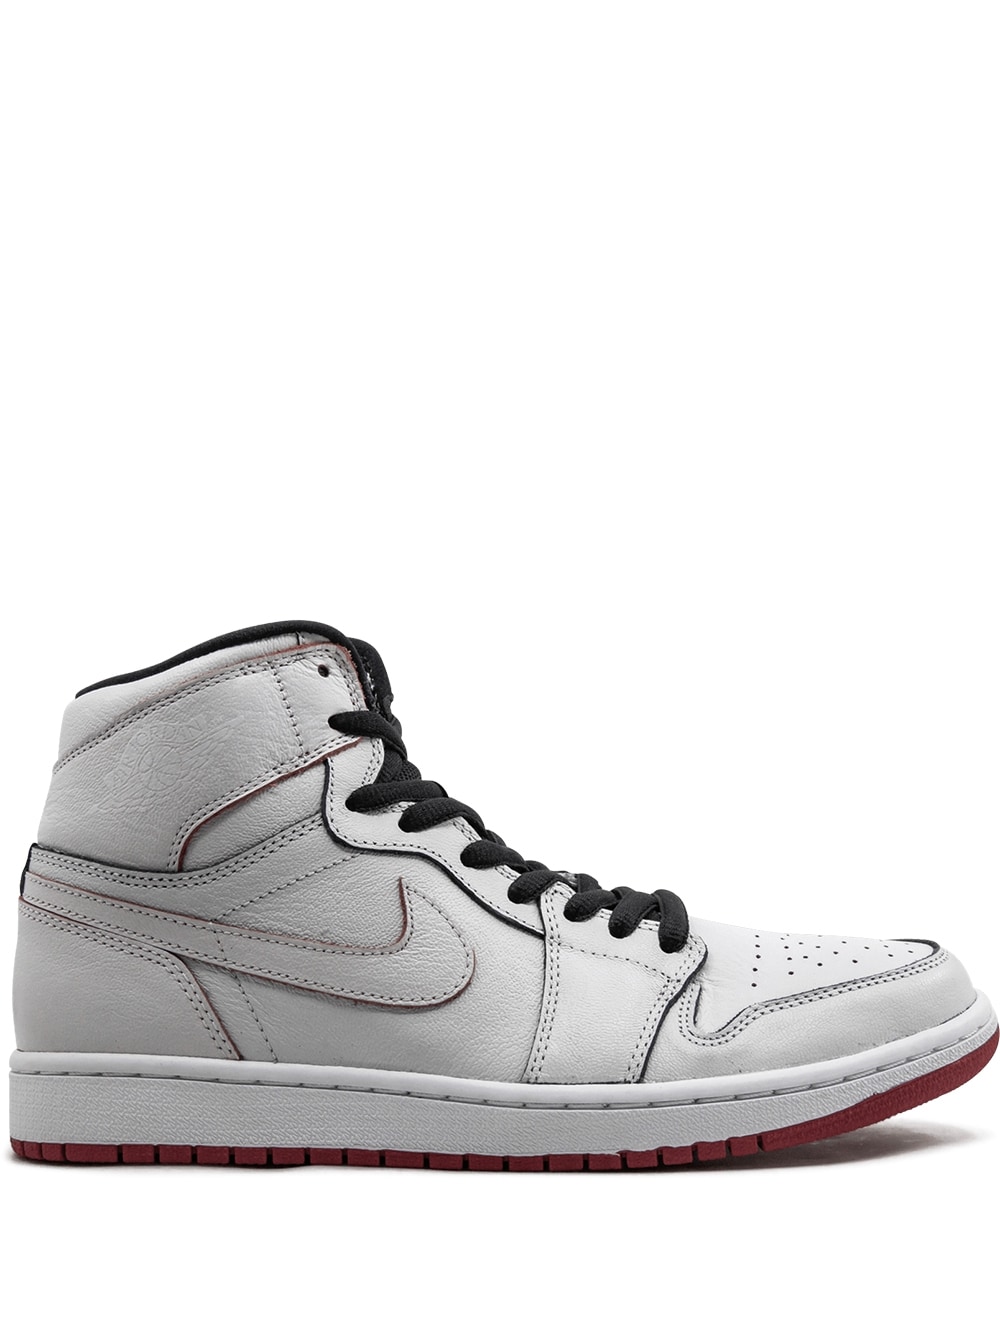 Jordan Jordan 1 SB QS sneakers - White